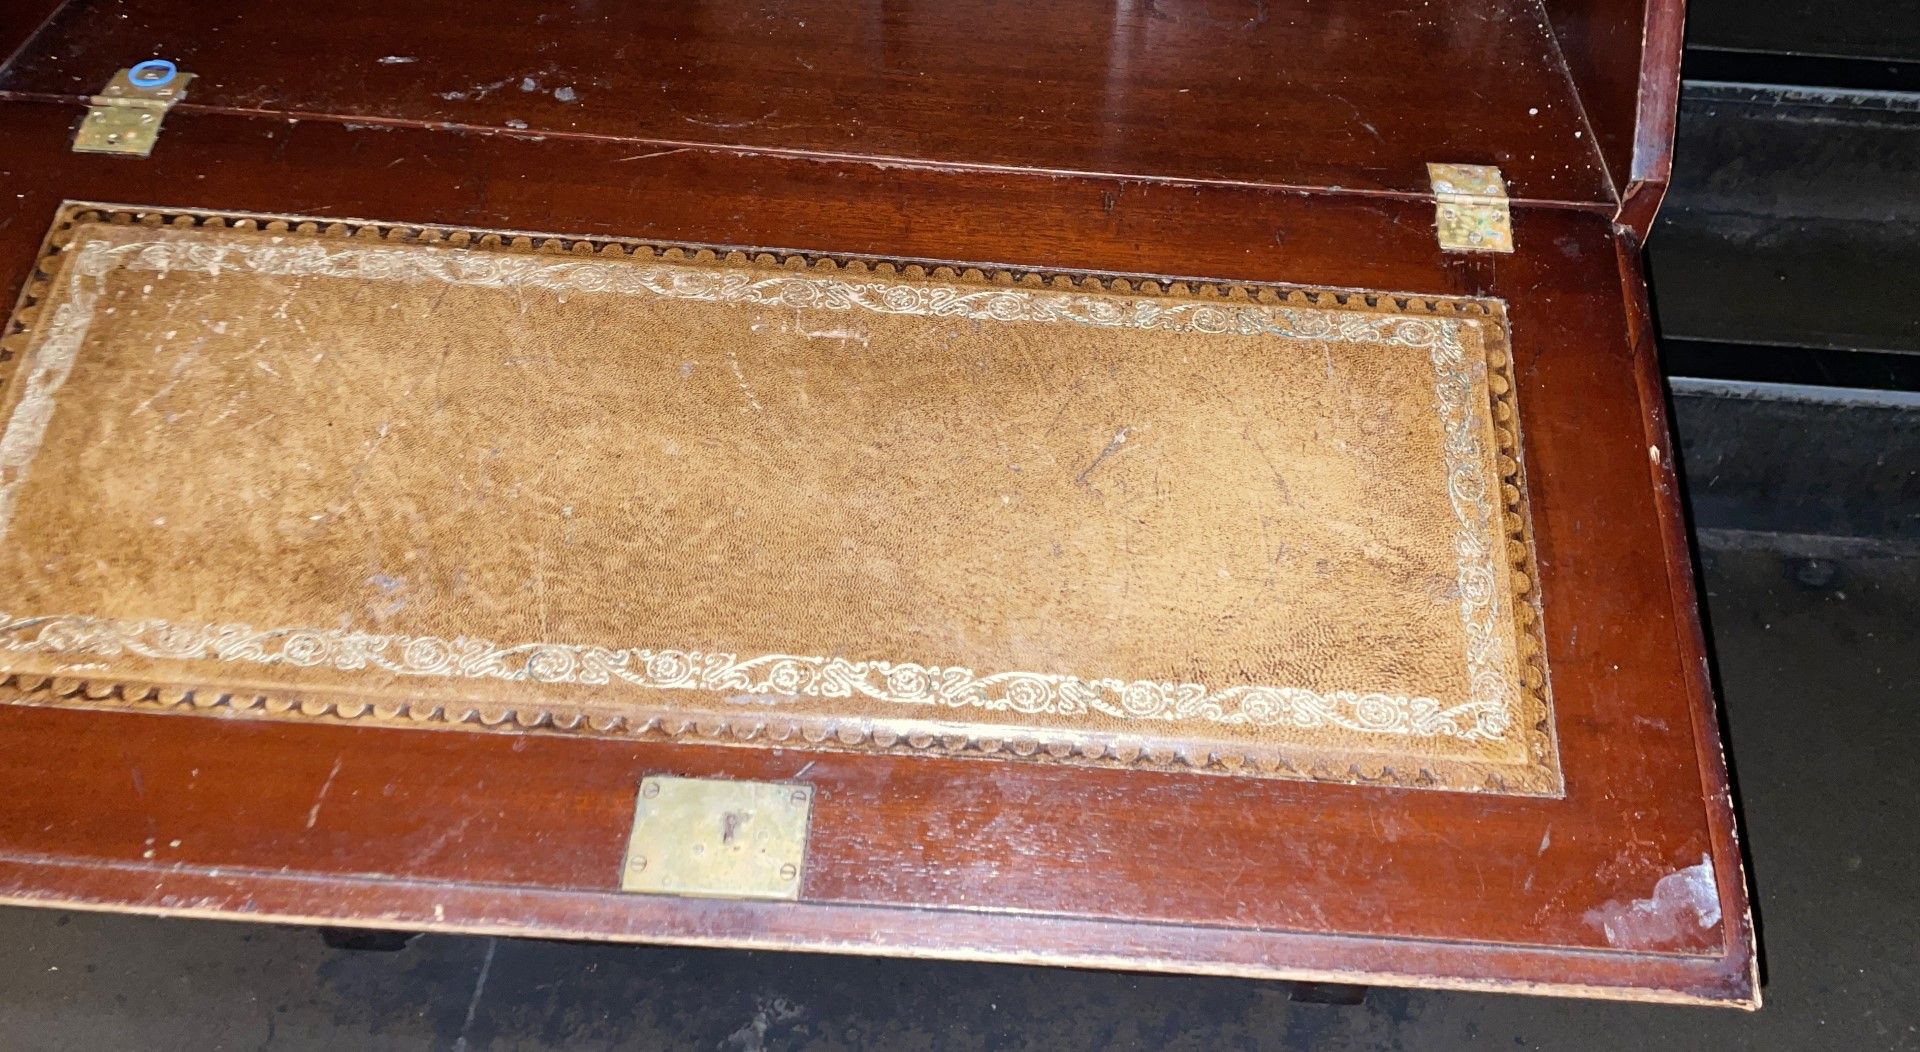 1 x Vintage Hand-built Lockable Wooden Bureu Writing Desk, with Keys - Image 11 of 12